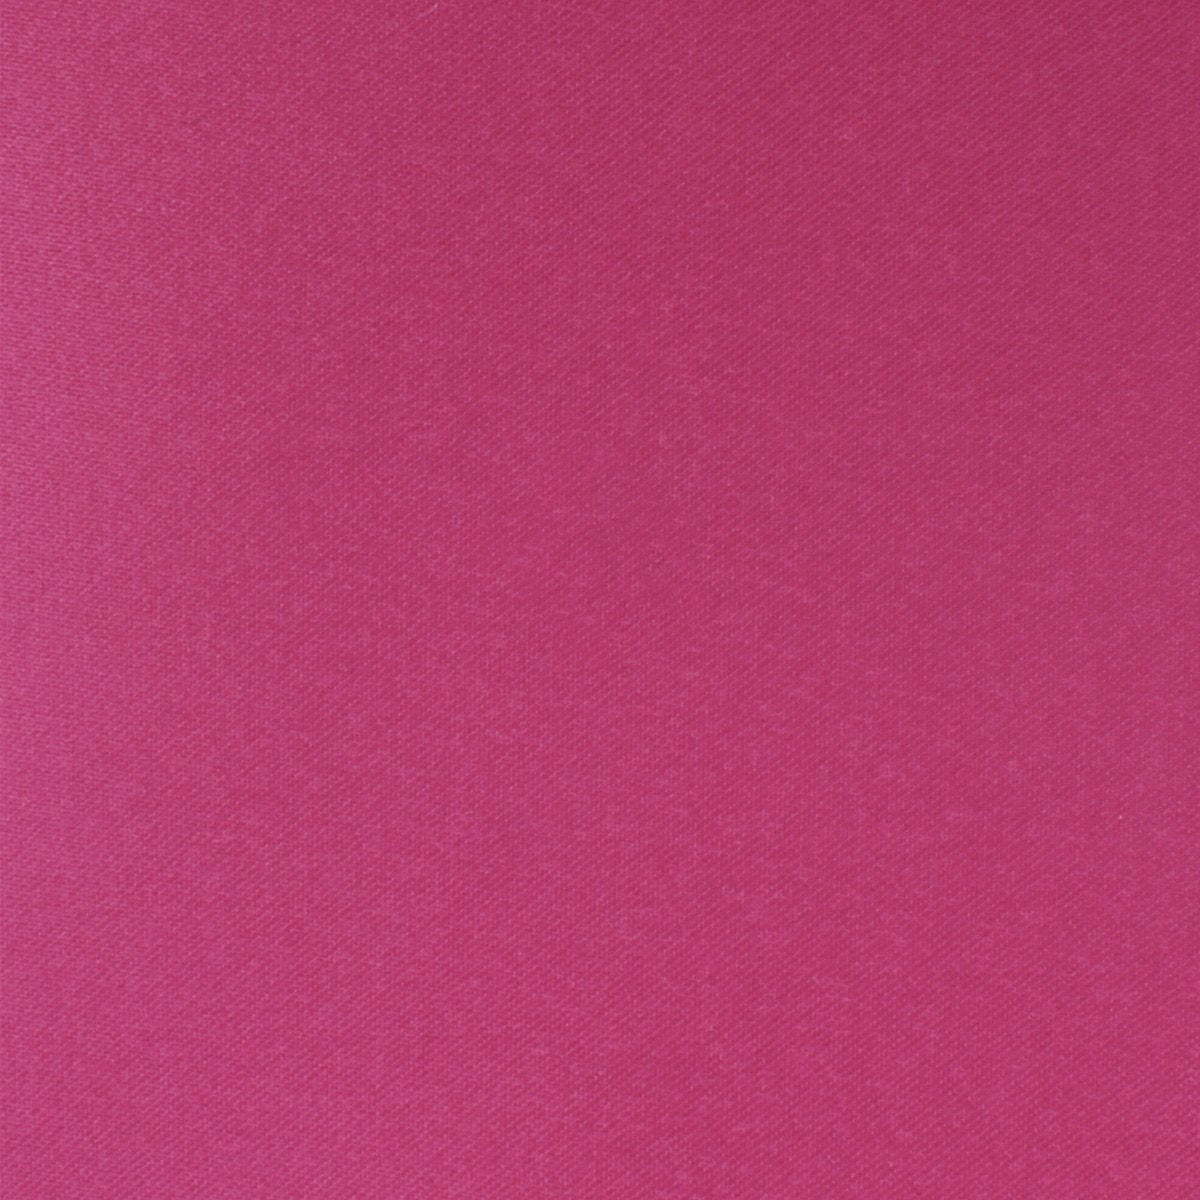 Magenta Pink Satin Necktie Fabric